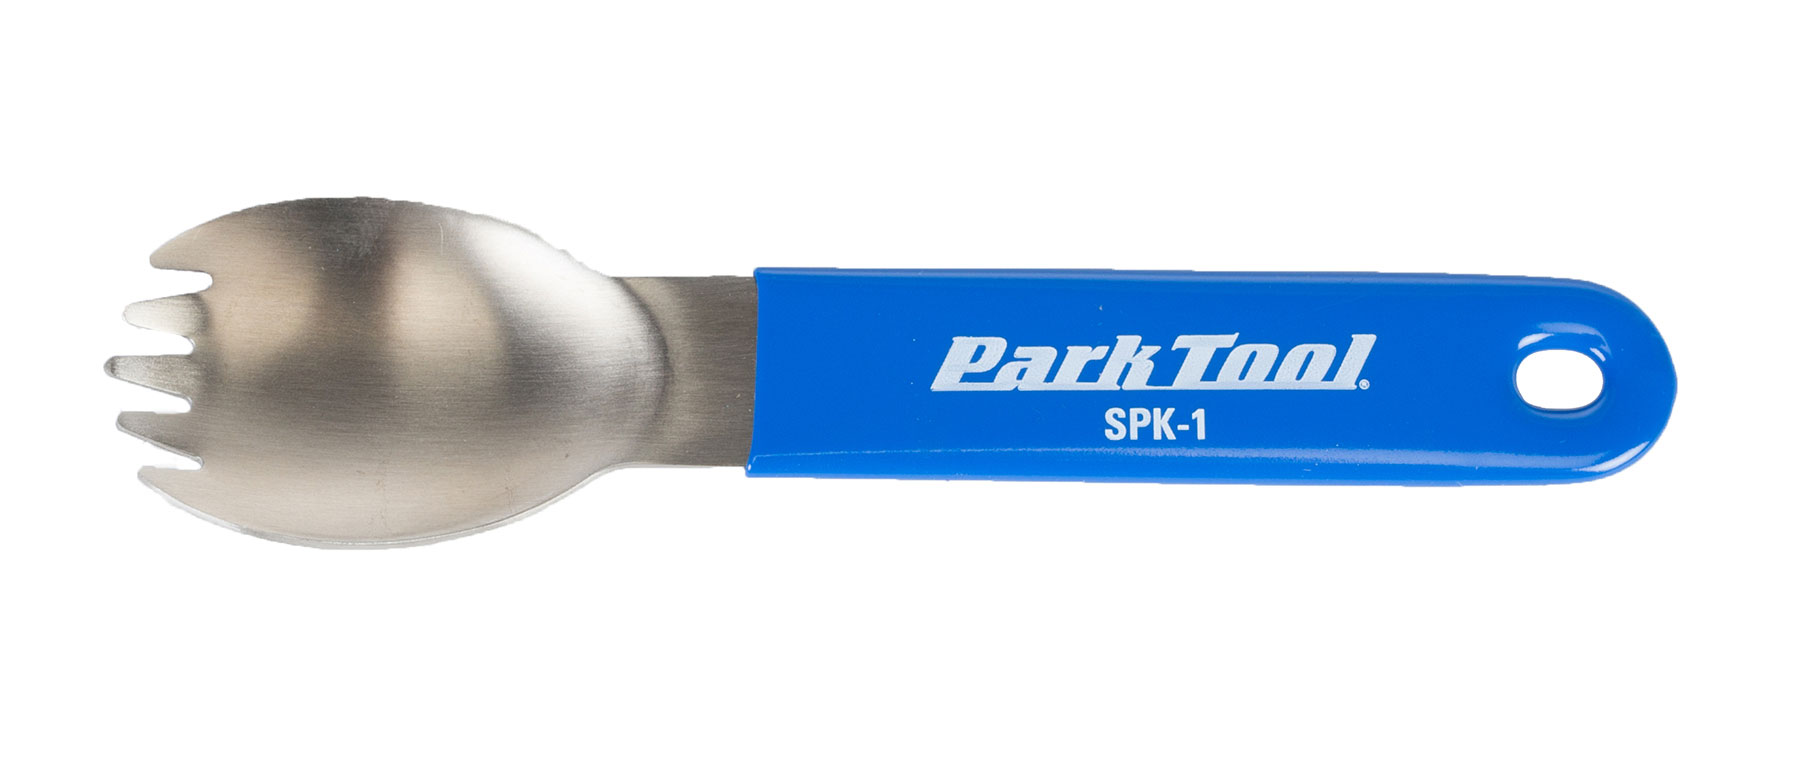 Park Tool SPK-1 Stainless Steel Spork